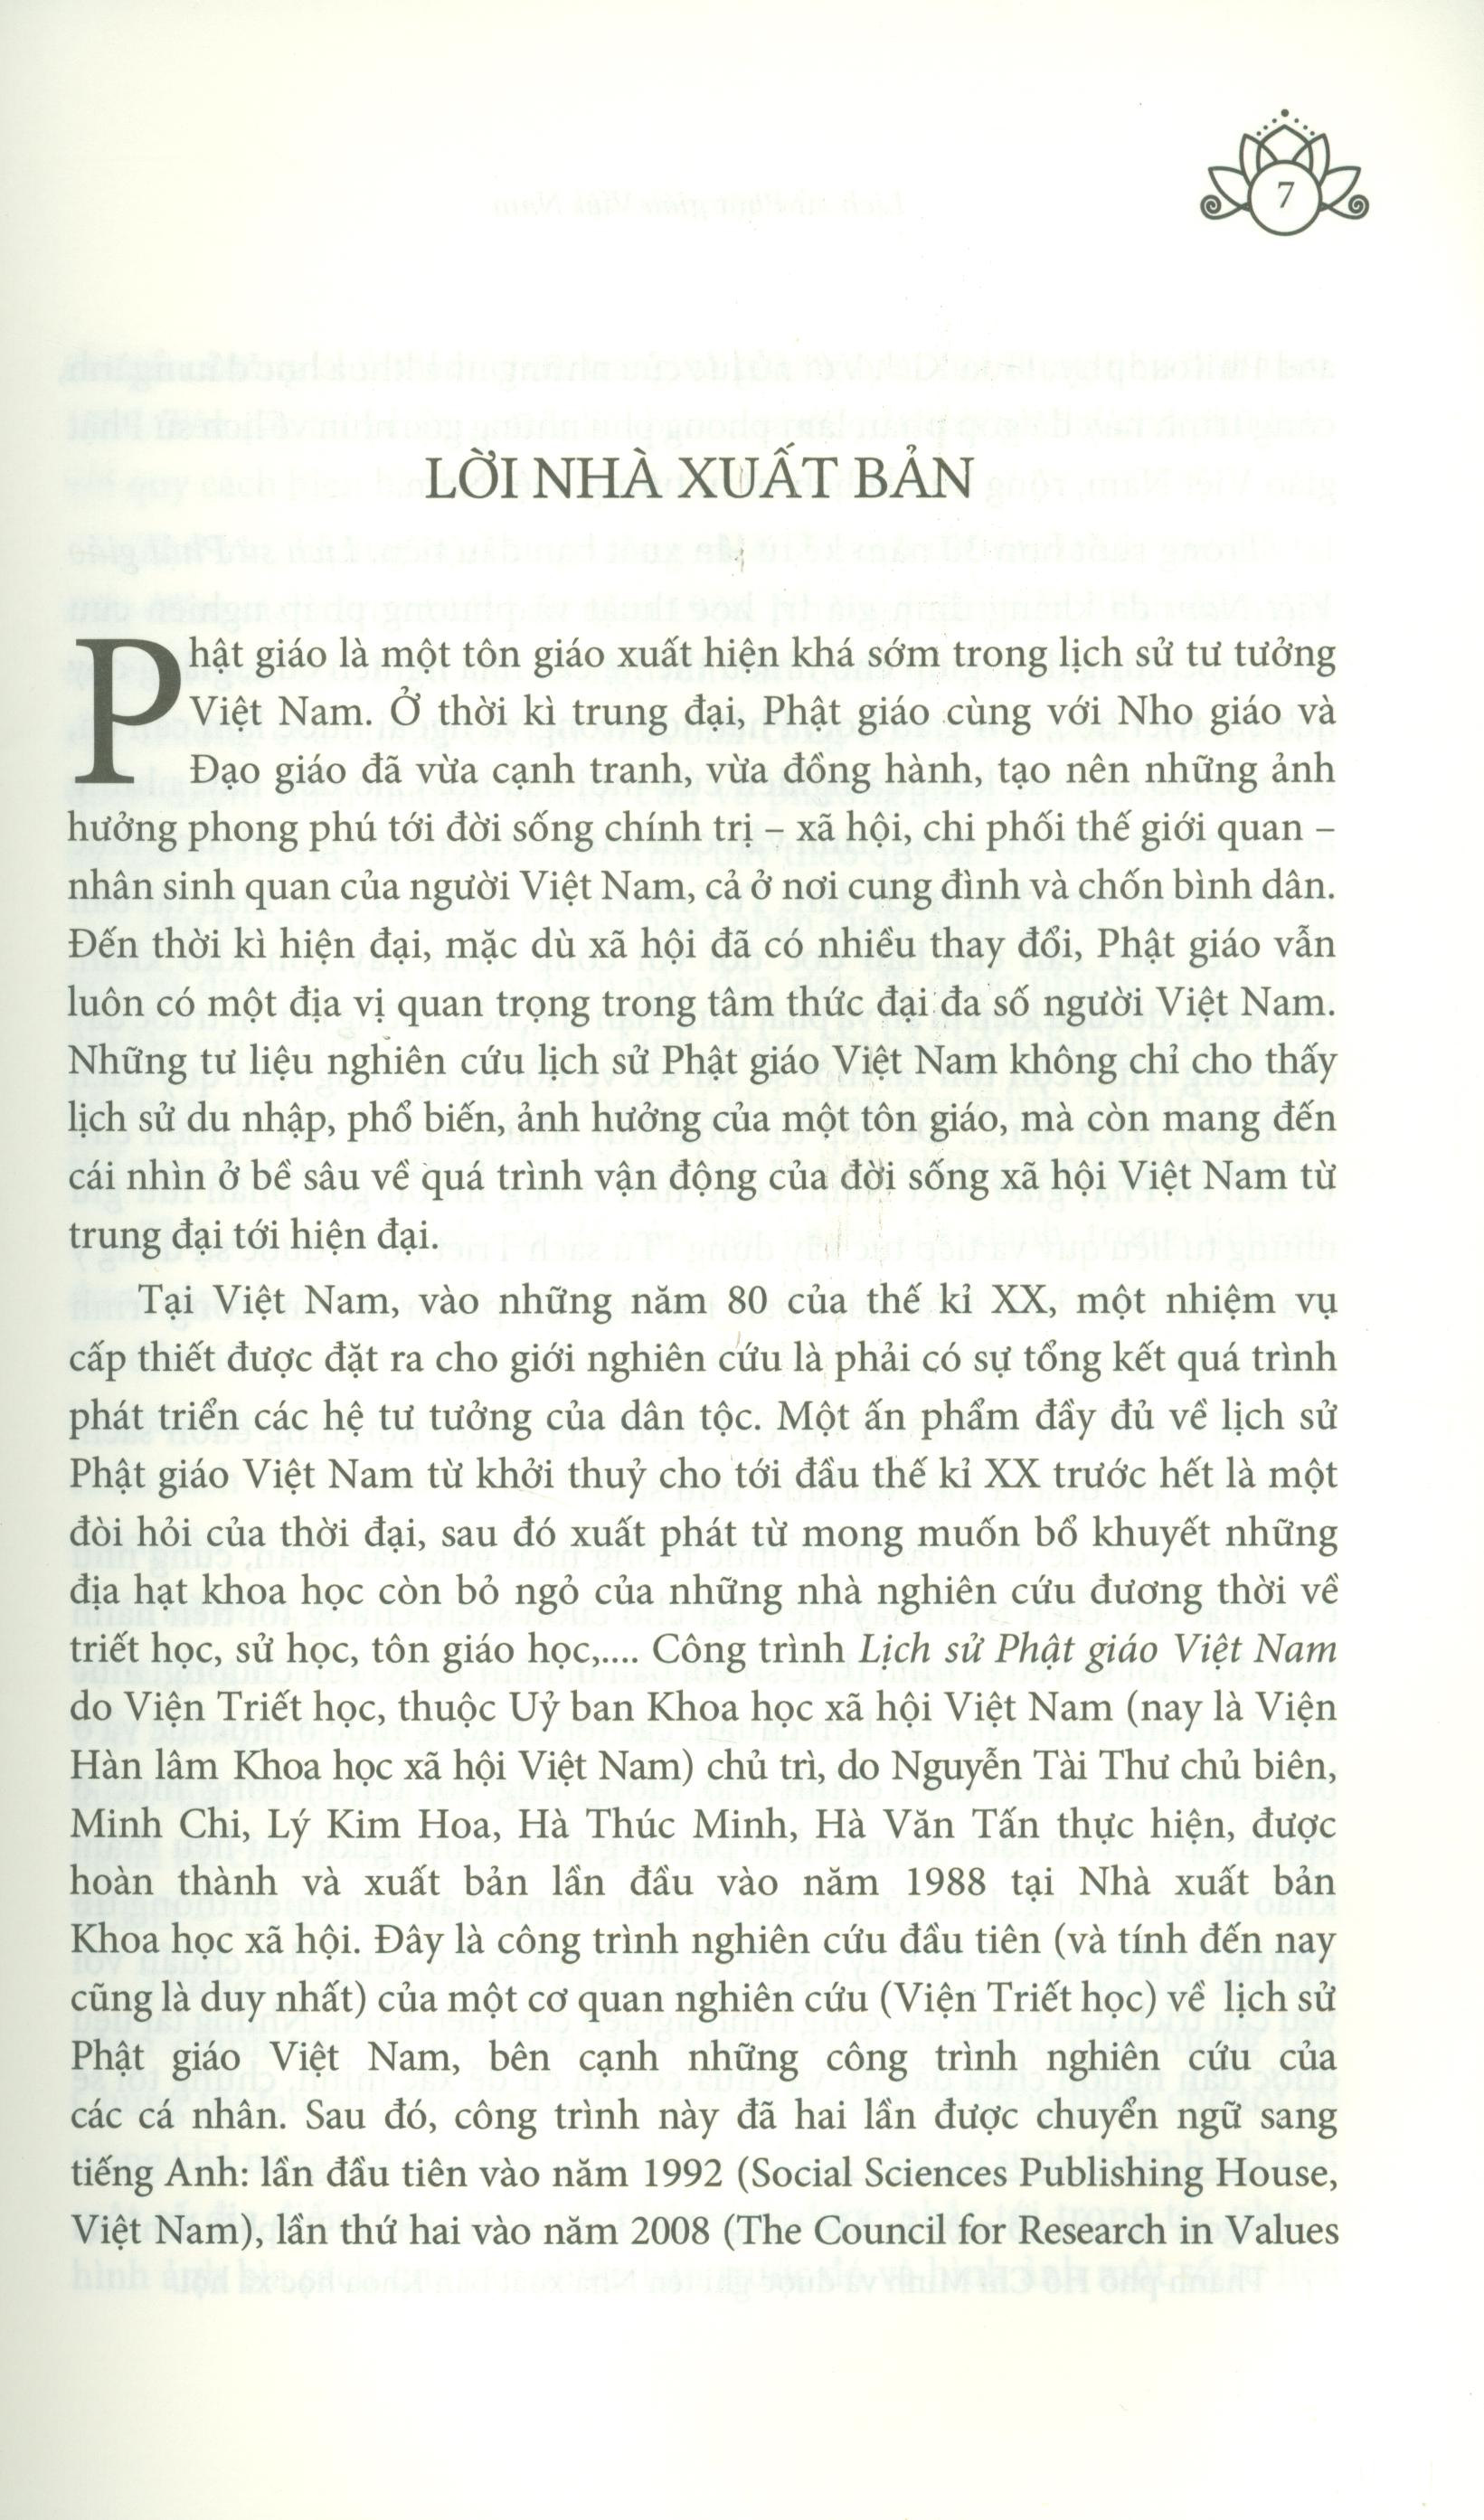 Lịch Sử Phật Giáo Việt Nam (Bìa mềm)